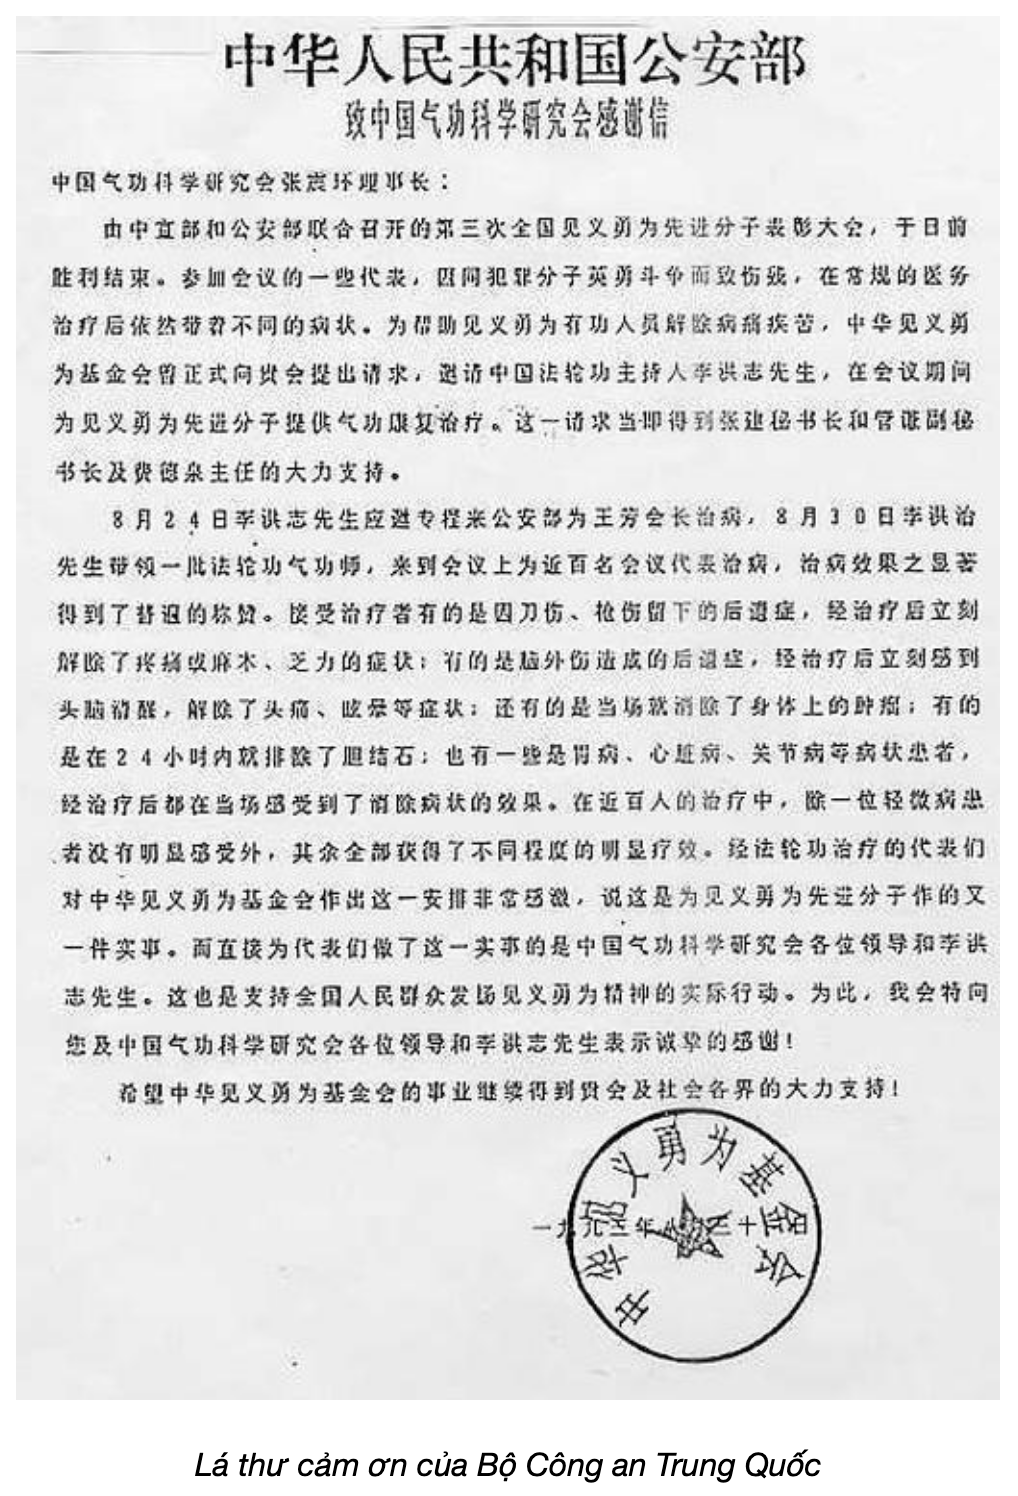 Lá thư cảm ơn của Bộ Công an Trung Quốc năm 1993